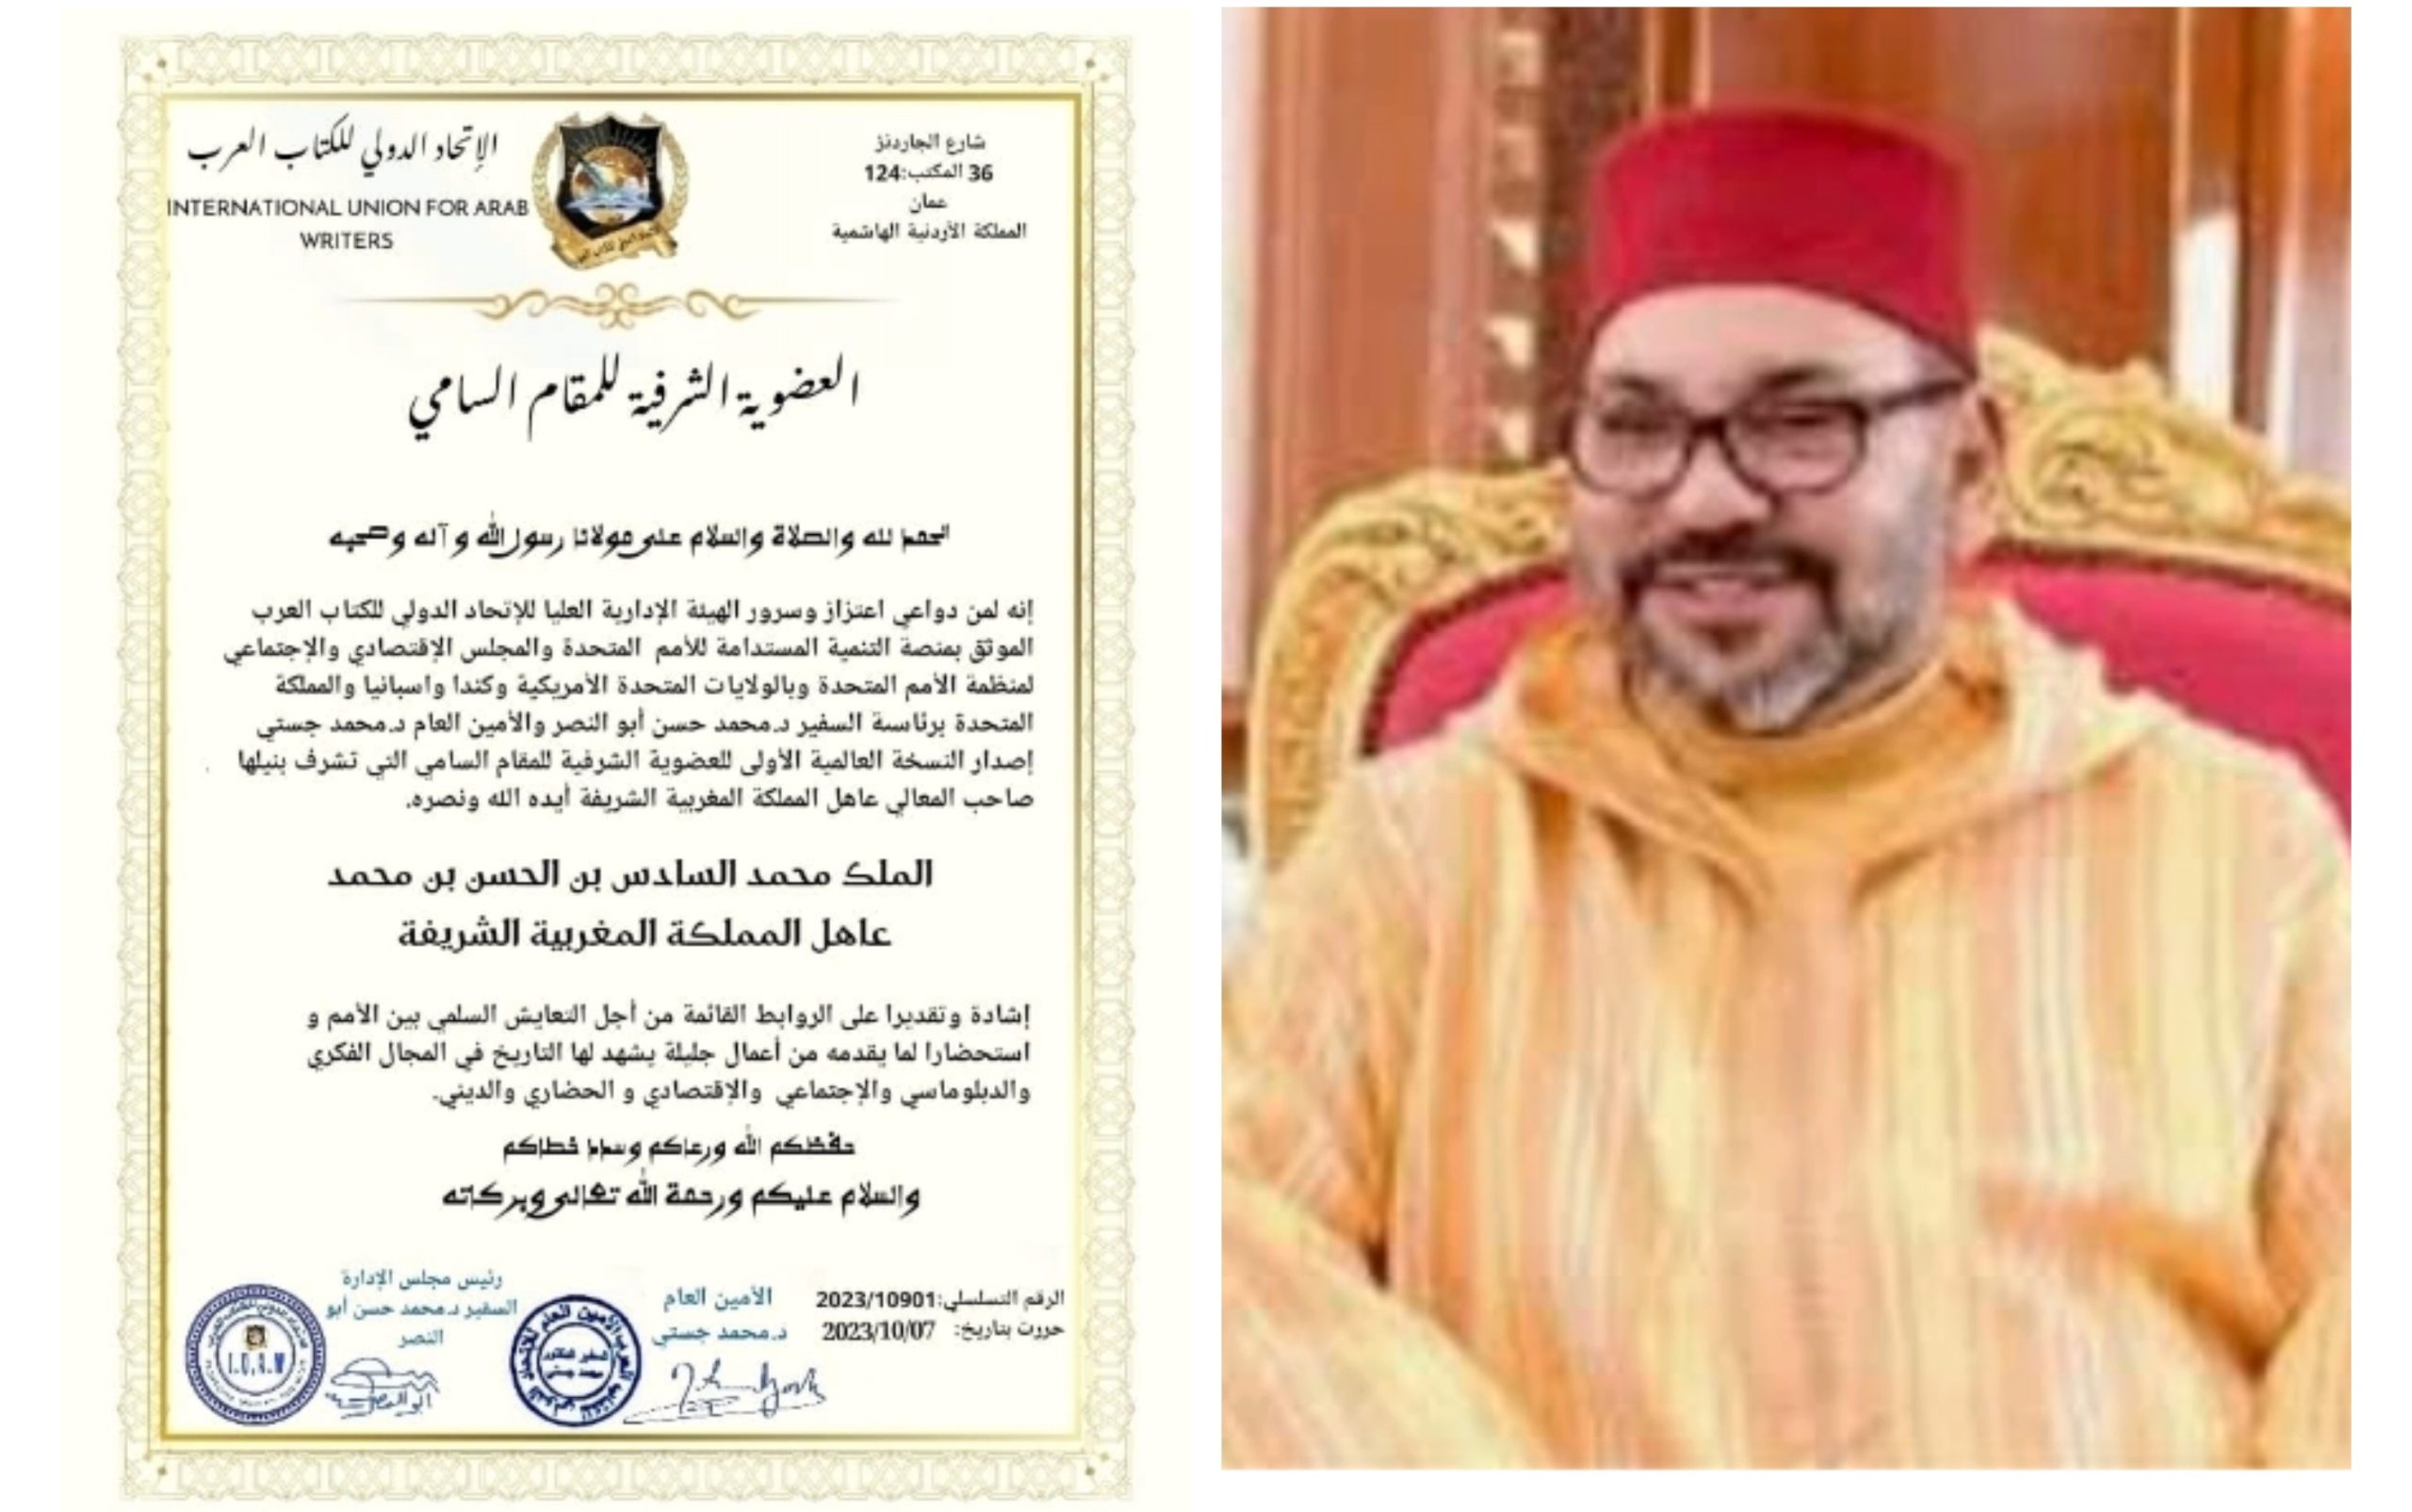 العضويه الشرفية للمقام السامي عاهل المملكة المغربية الملك محمد السادس بن الحسن بن محمد